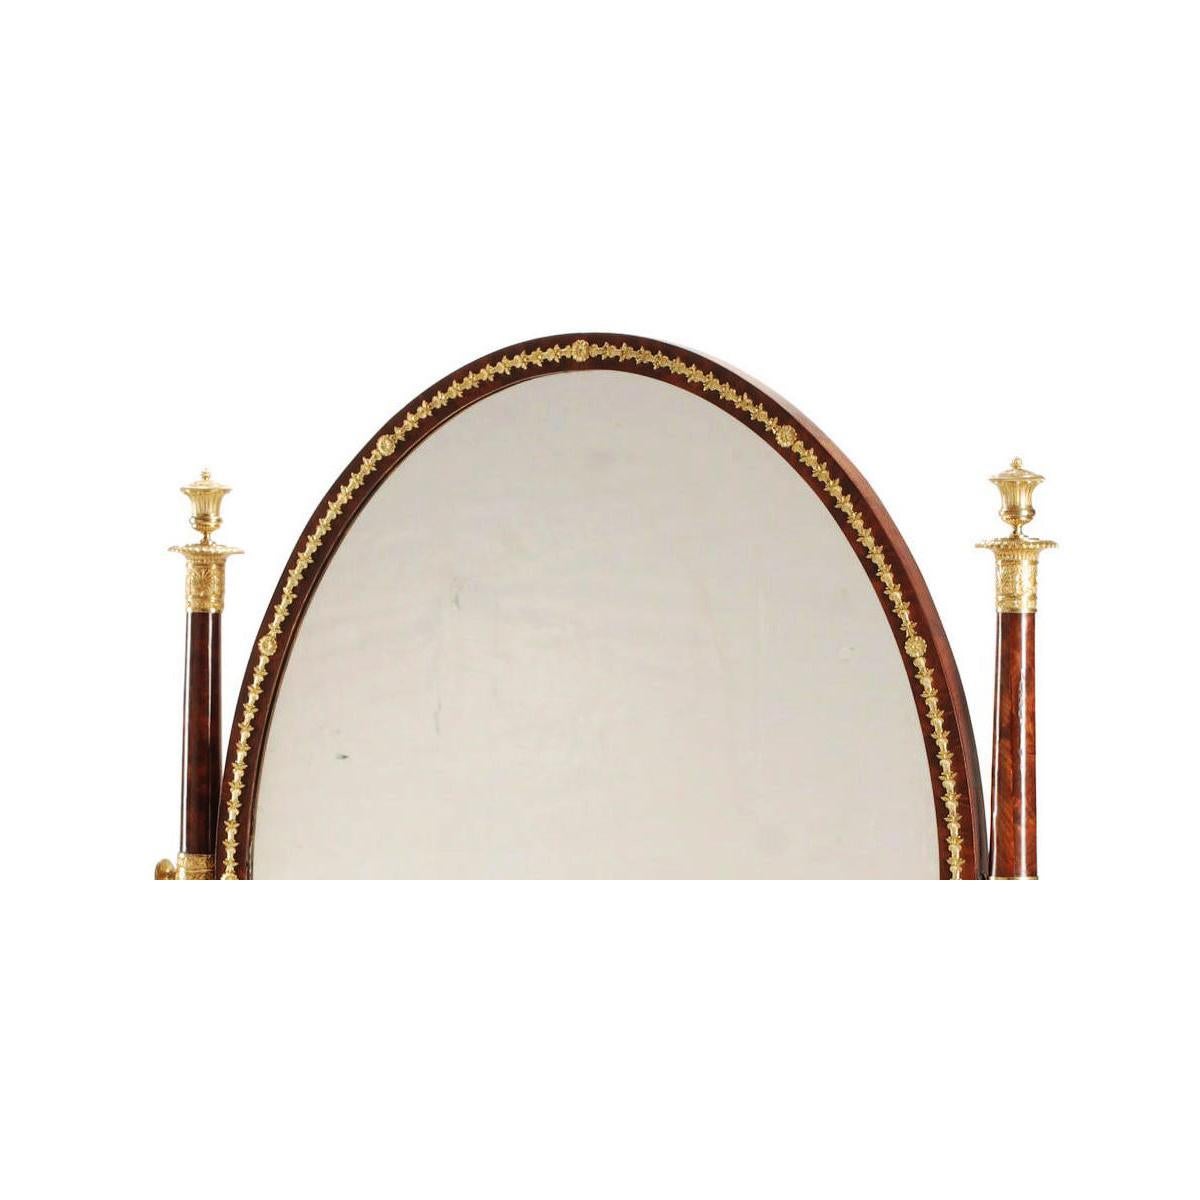 Très beau miroir pivotant de style Napoléon III Empire du XIXe siècle, en acajou et bronze doré, monté sur pied. La plaque de miroir à encadrement ovale est surmontée de couronnes de laurier en bronze doré de style Empire, flanquée de supports